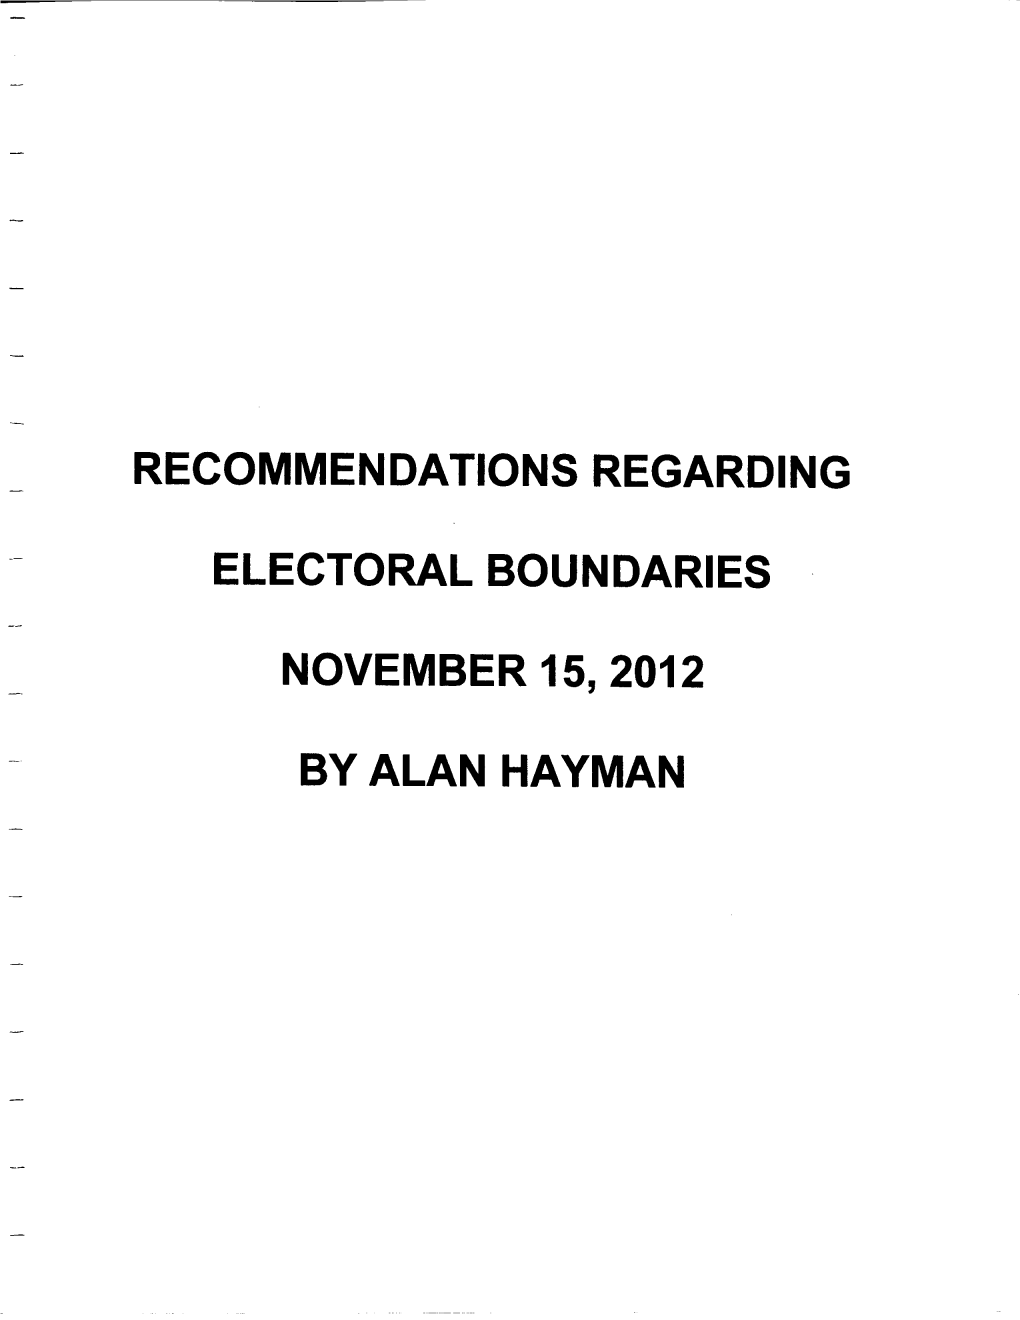 Alan Hayman, Q.C